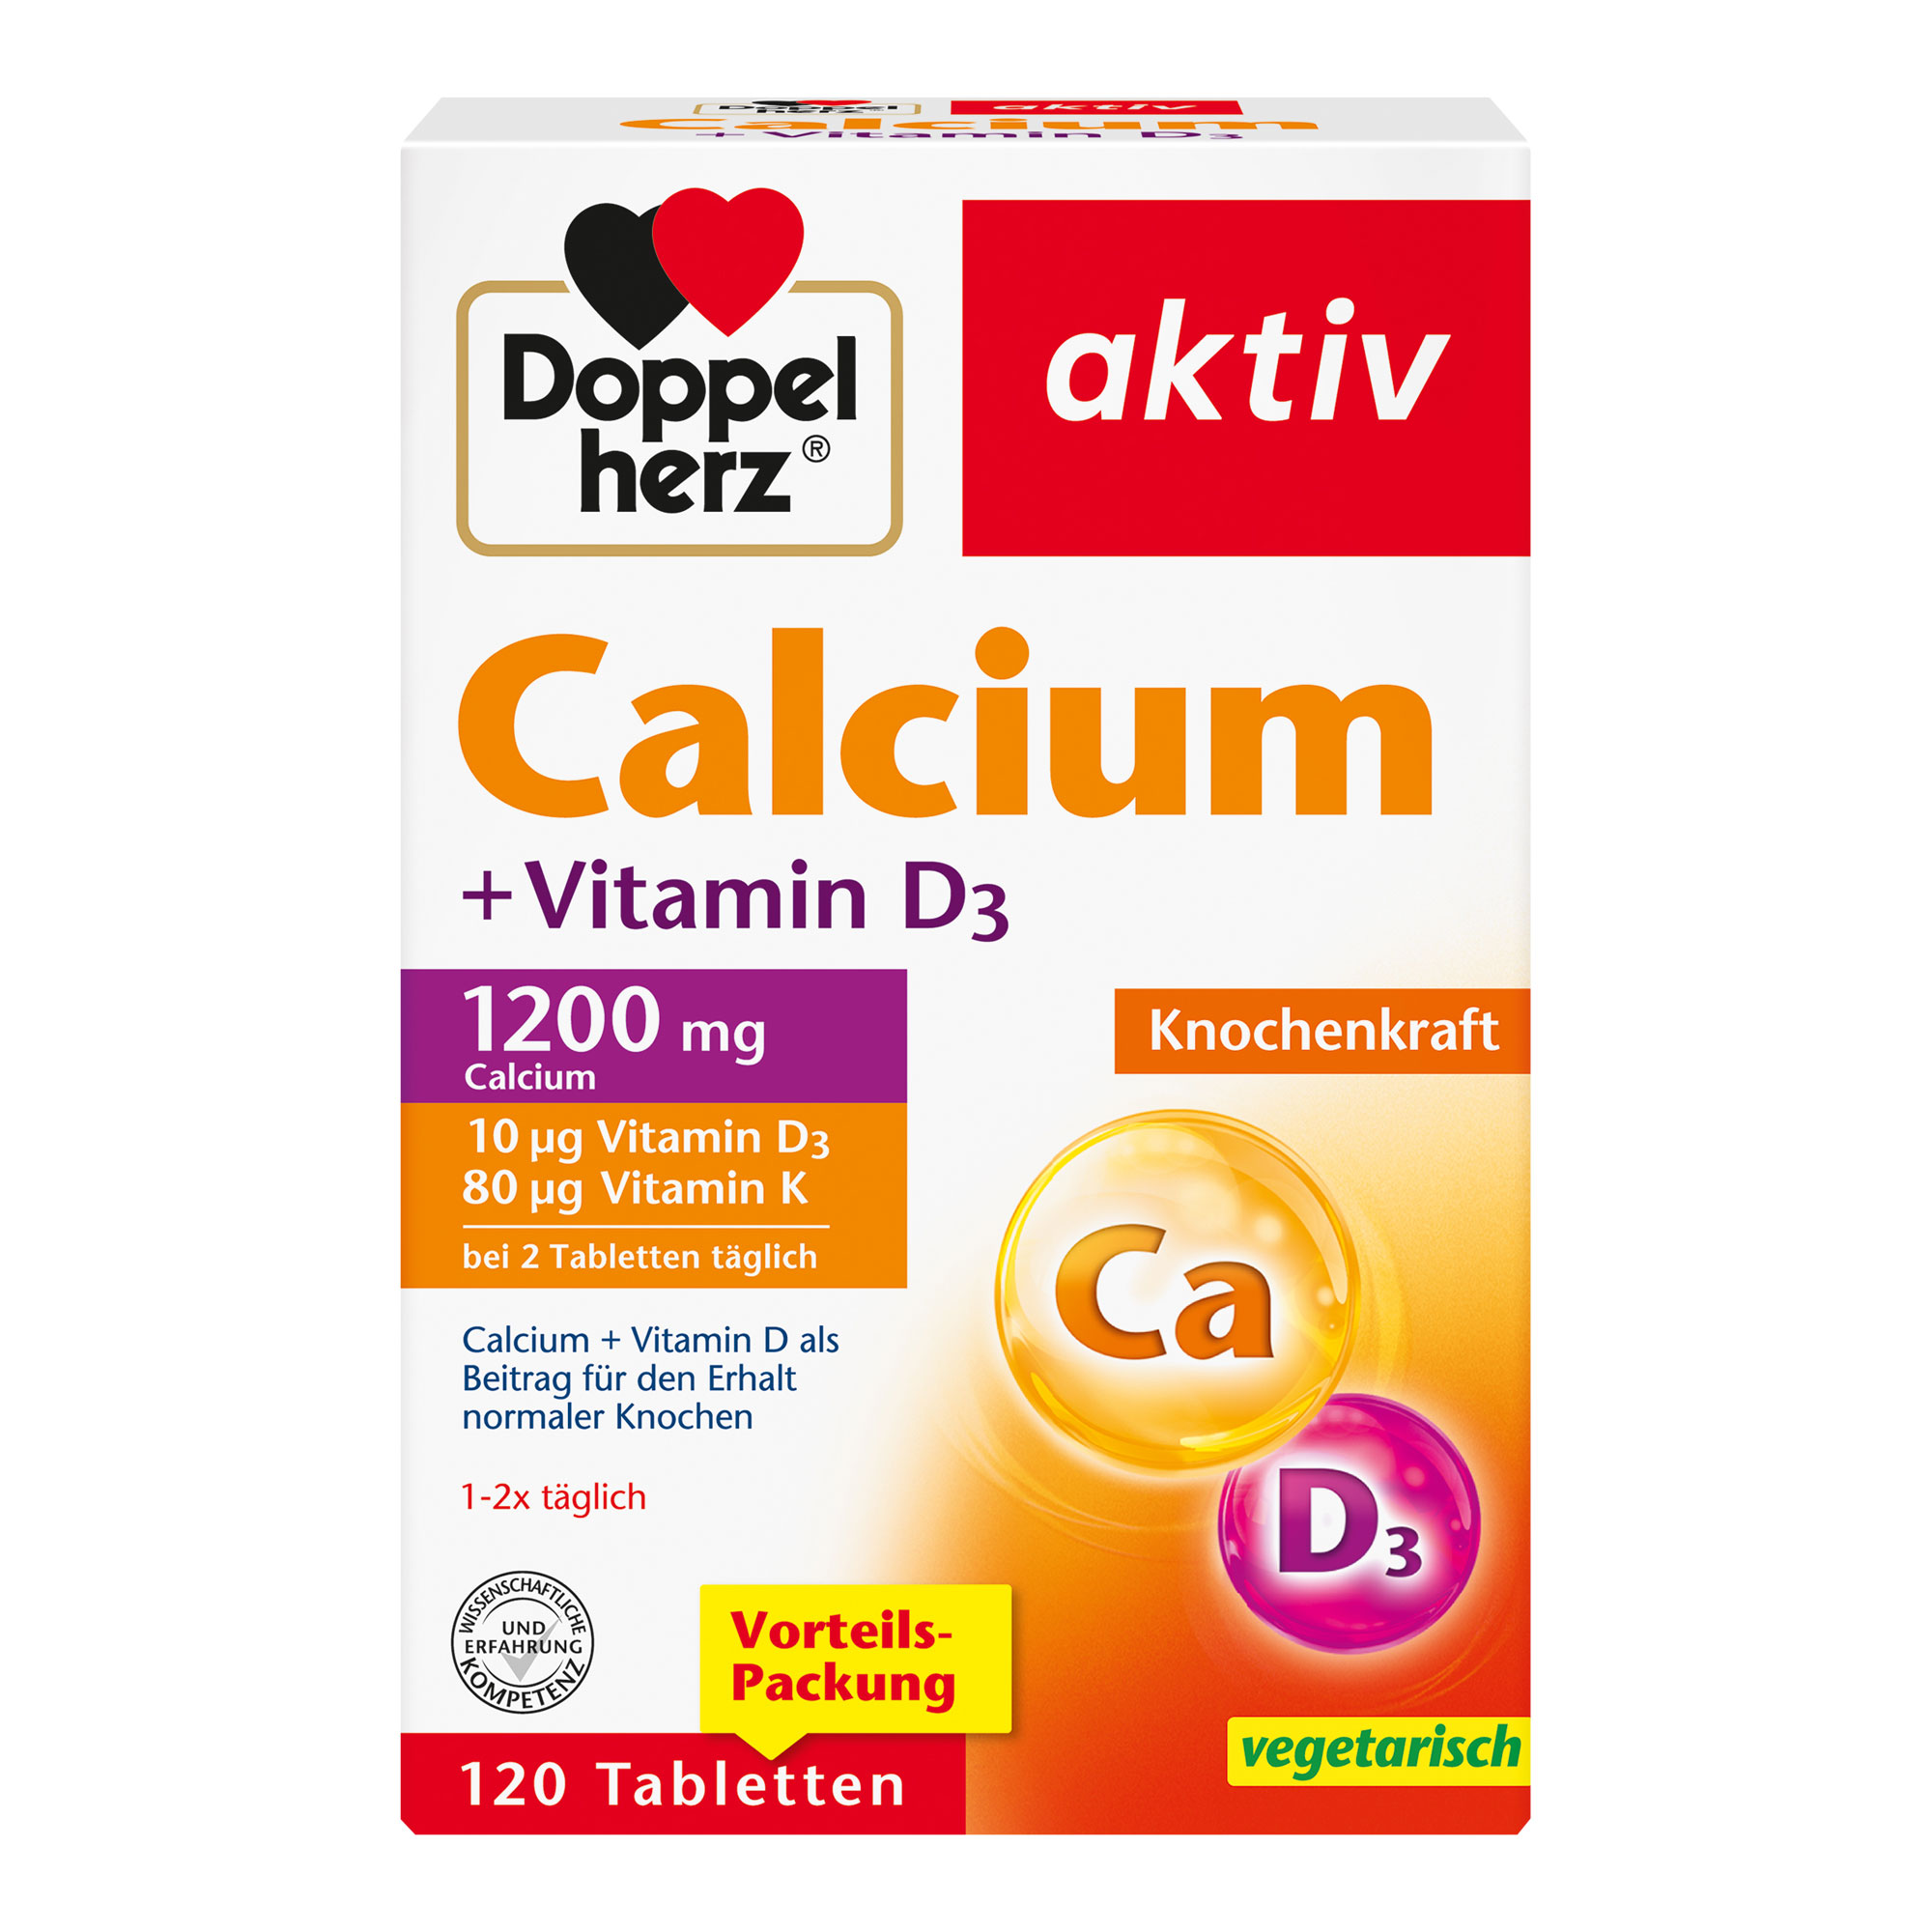 Nahrungsergänzungsmittel mit Calcium, Vitamin D und Vitamin K.